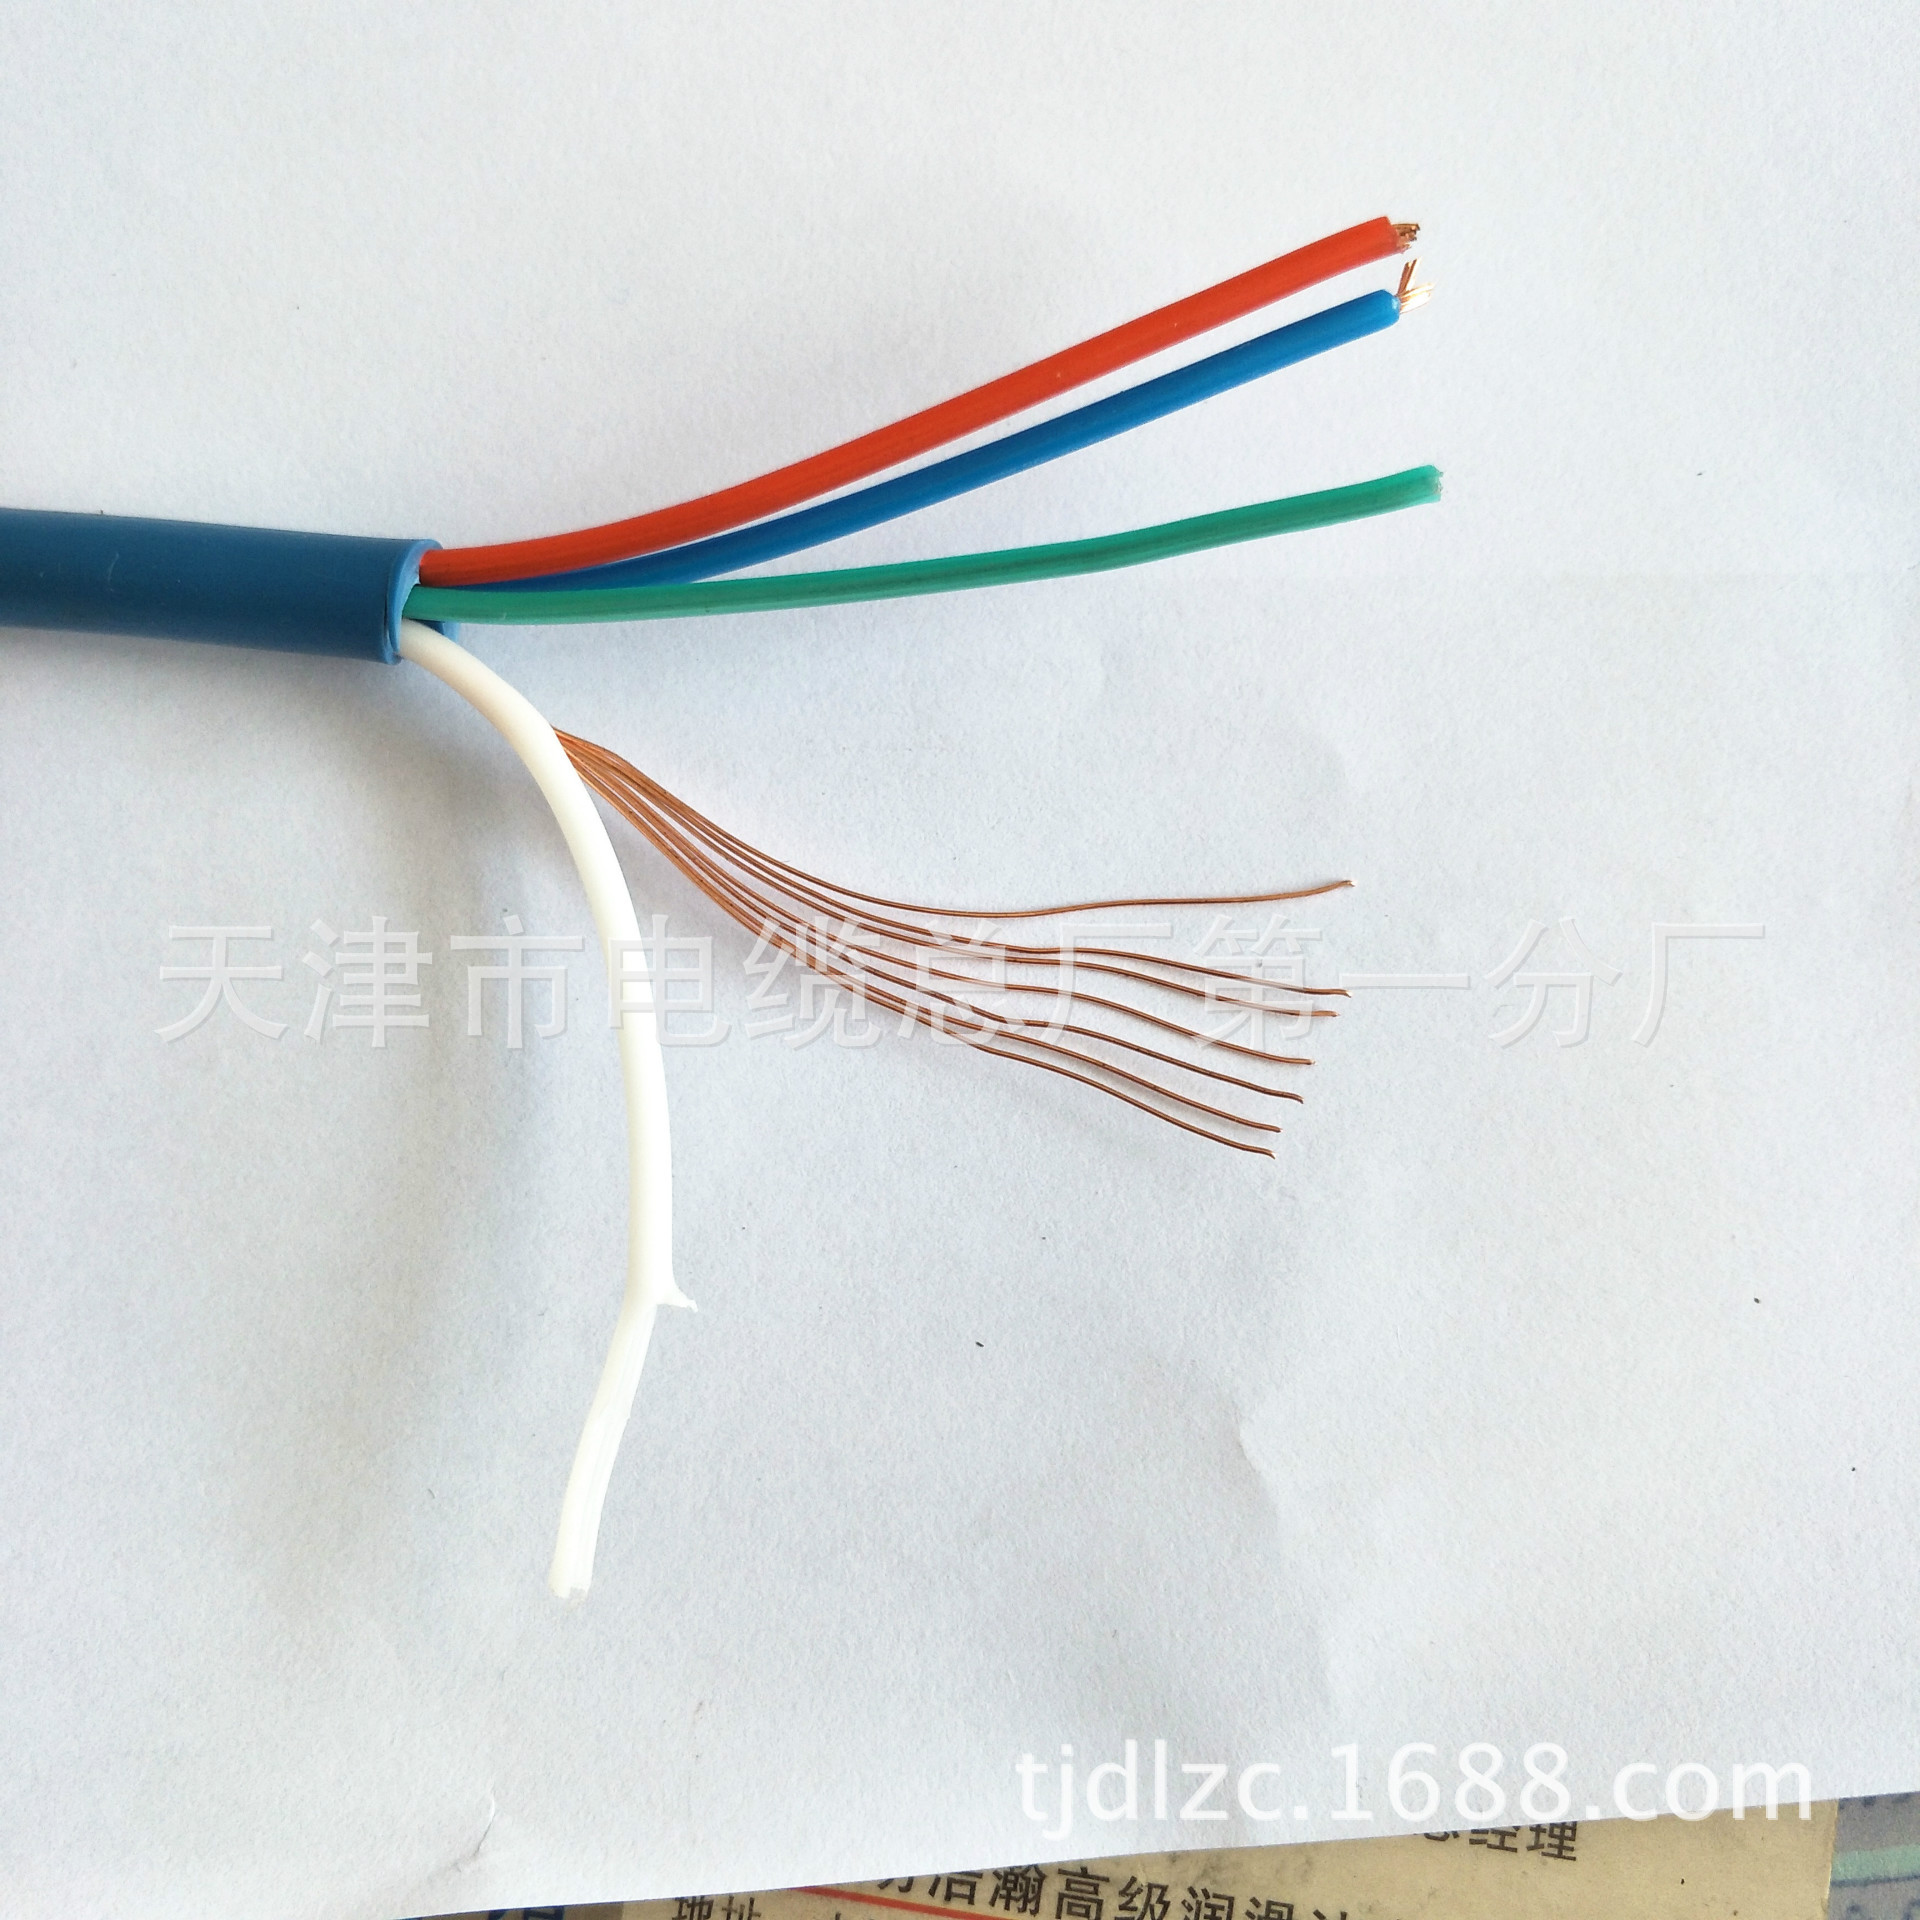 MHYV1*5*7/0.43通信电缆.矿用电缆示例图9